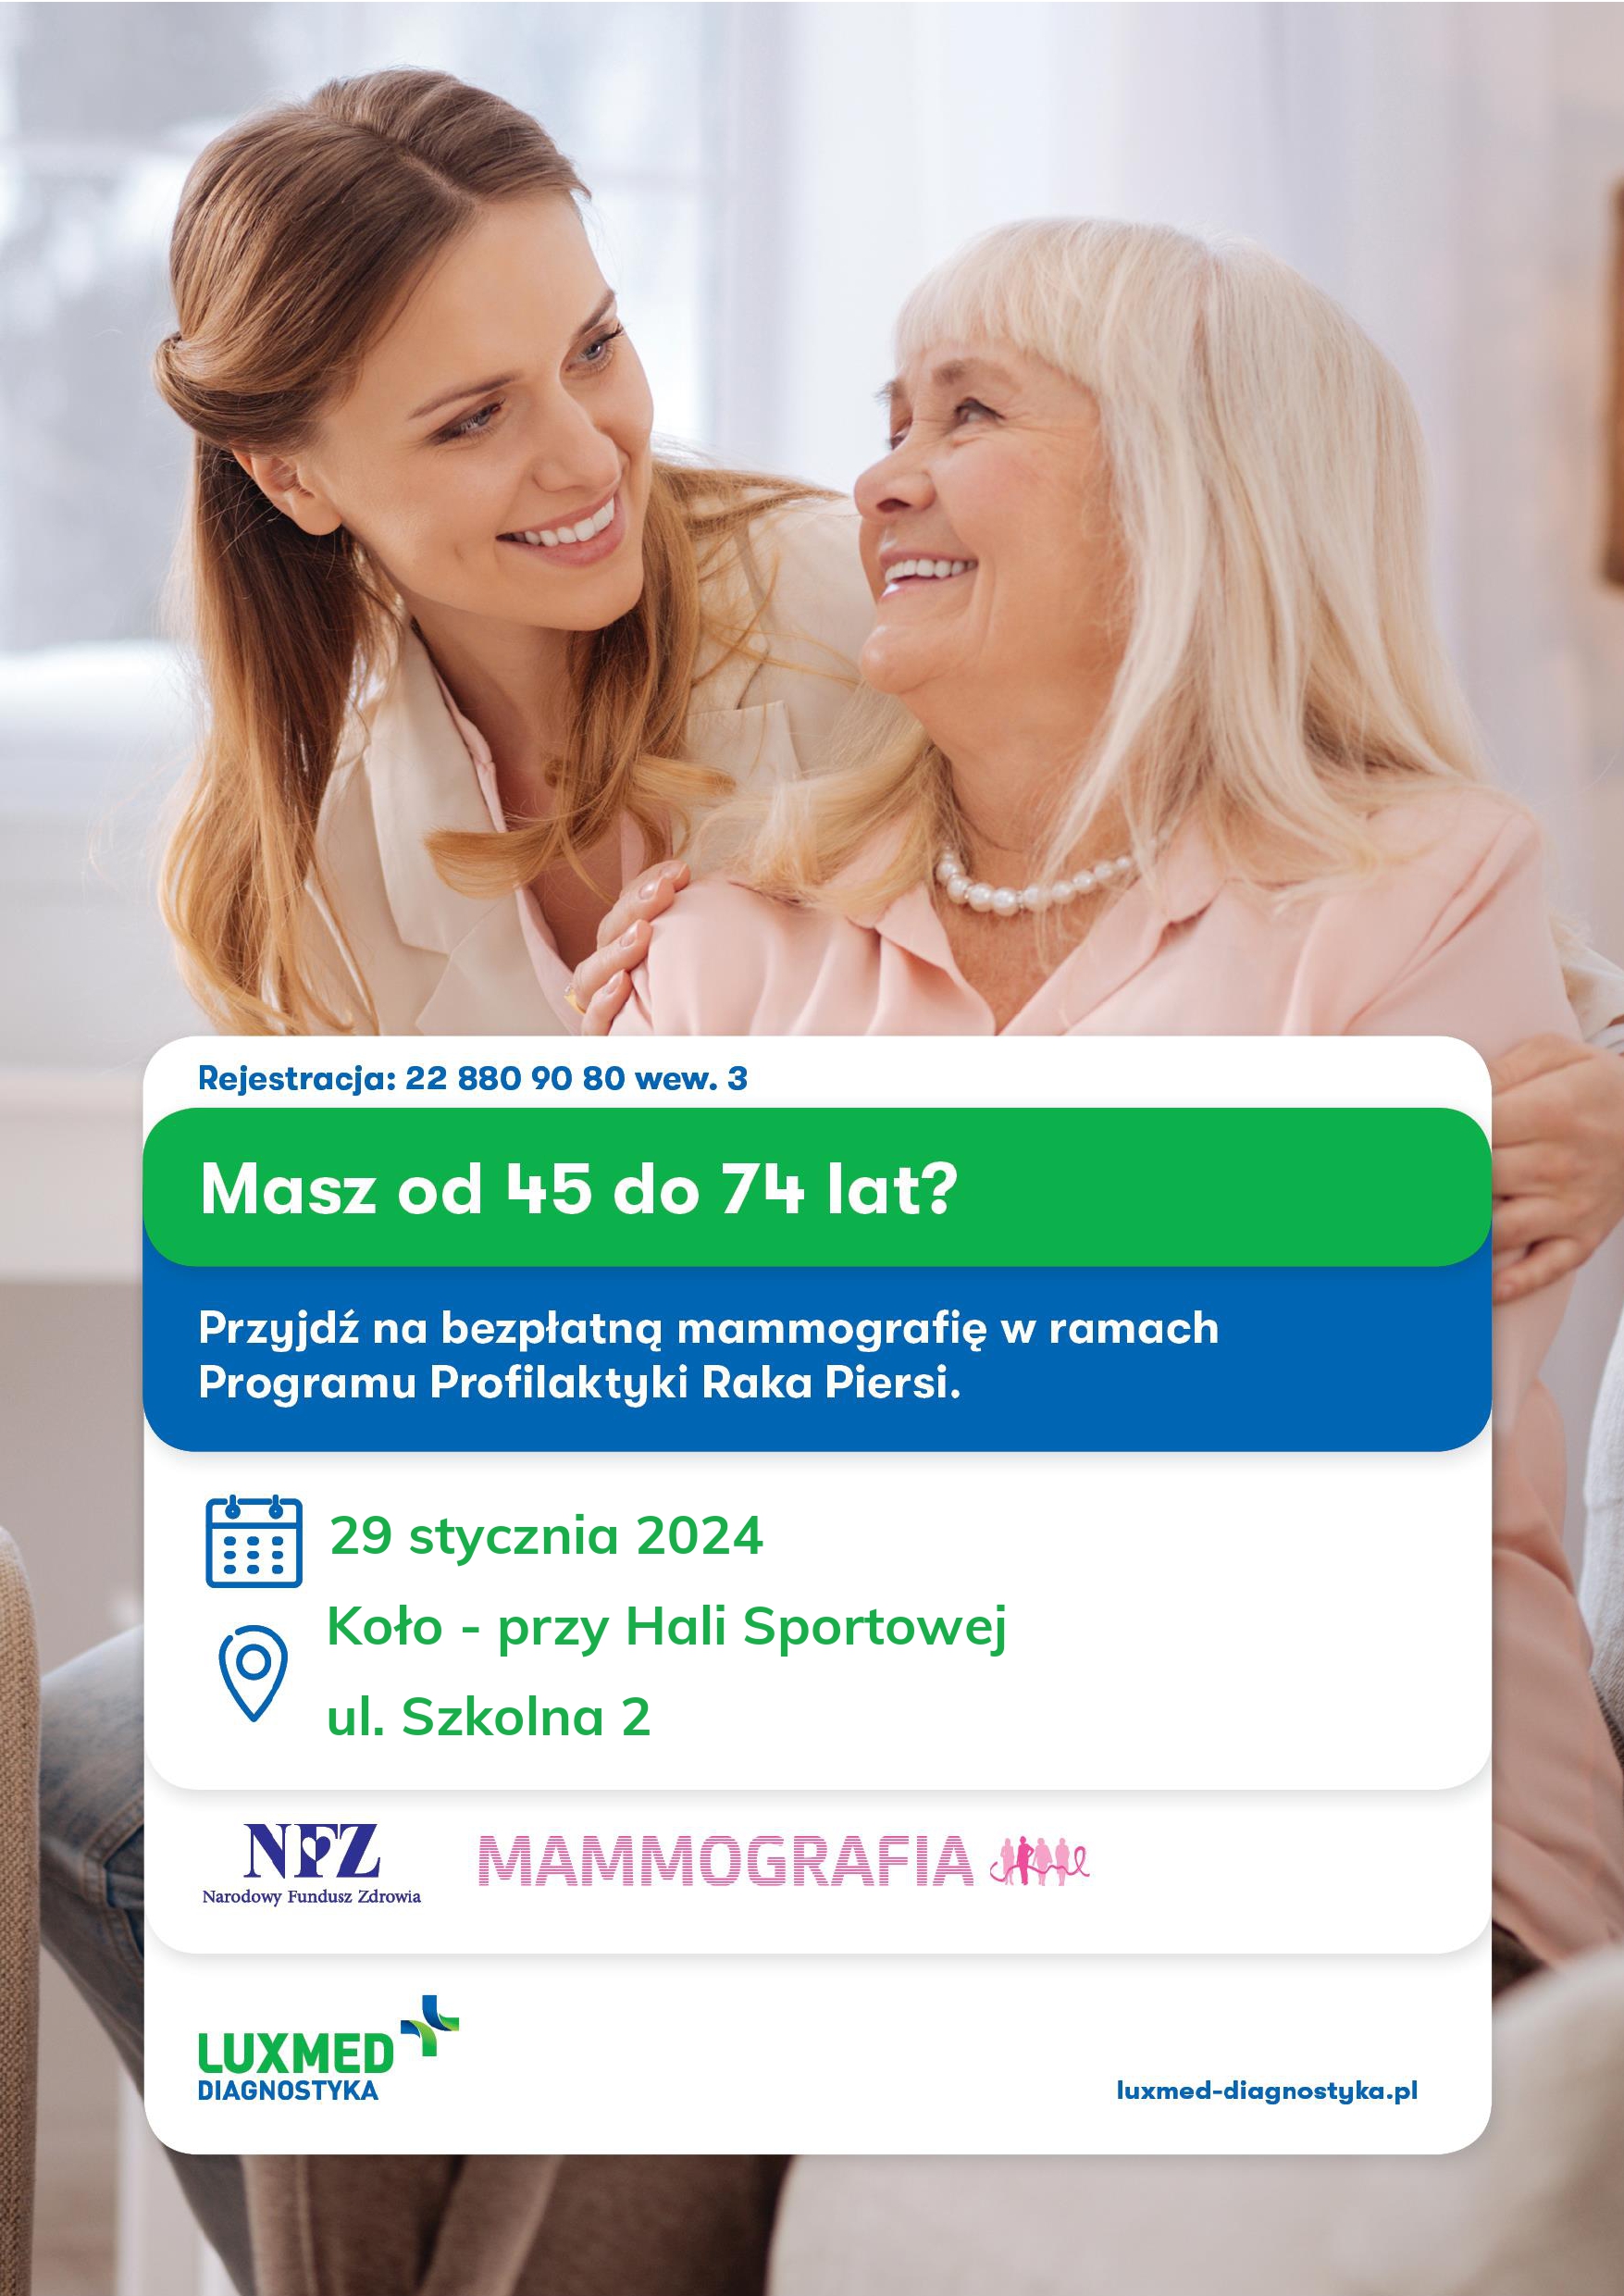 Infografika, bezpłatne badania mammograficzne dla Pań w wieku 45-74 lat, tekst pod infografiką.